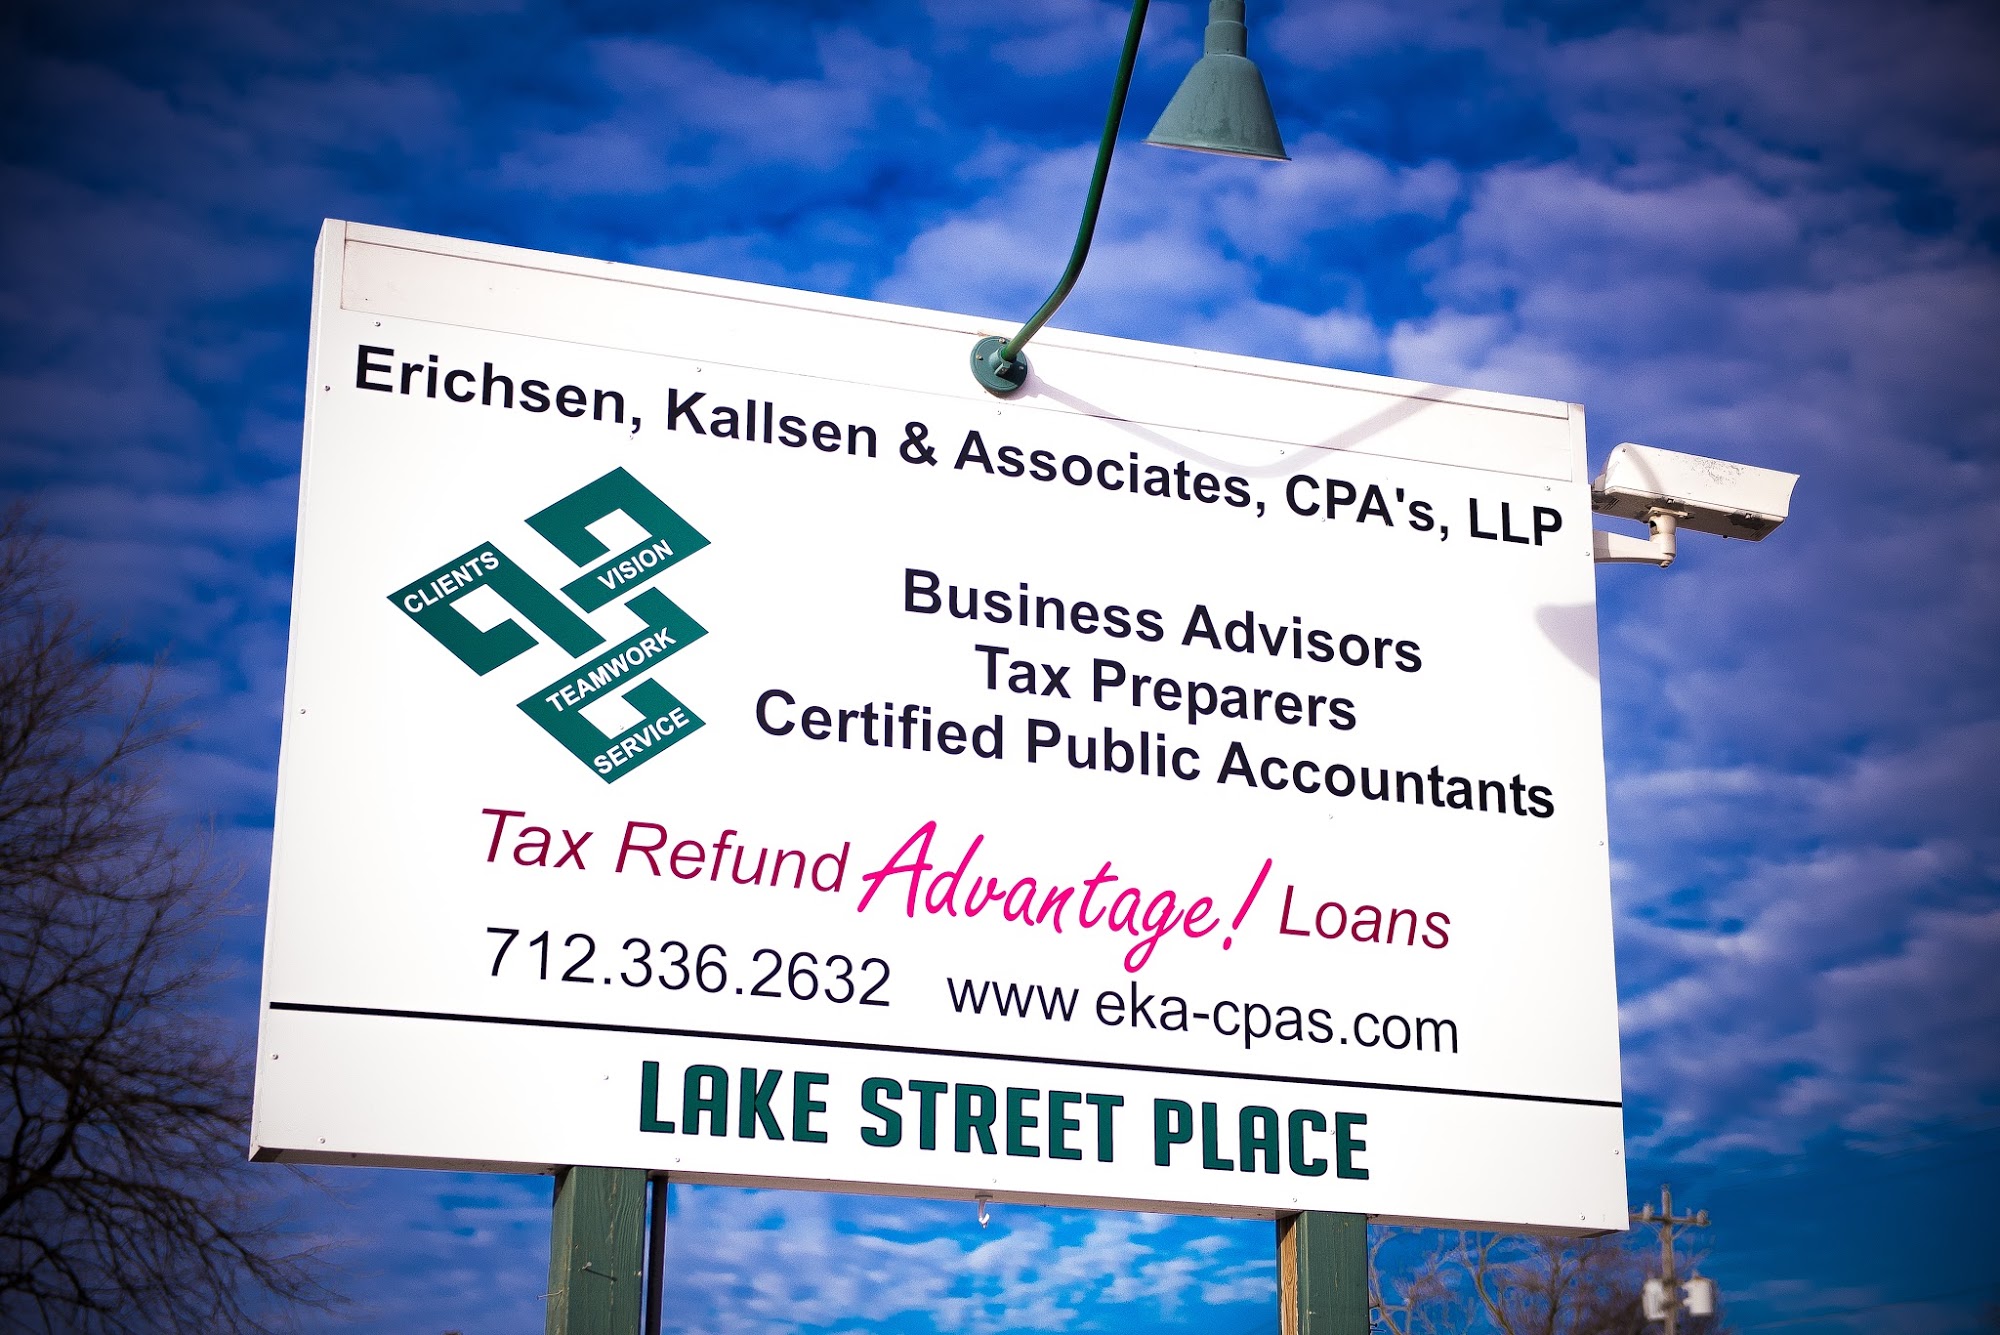 Kallsen & Associates, CPA's